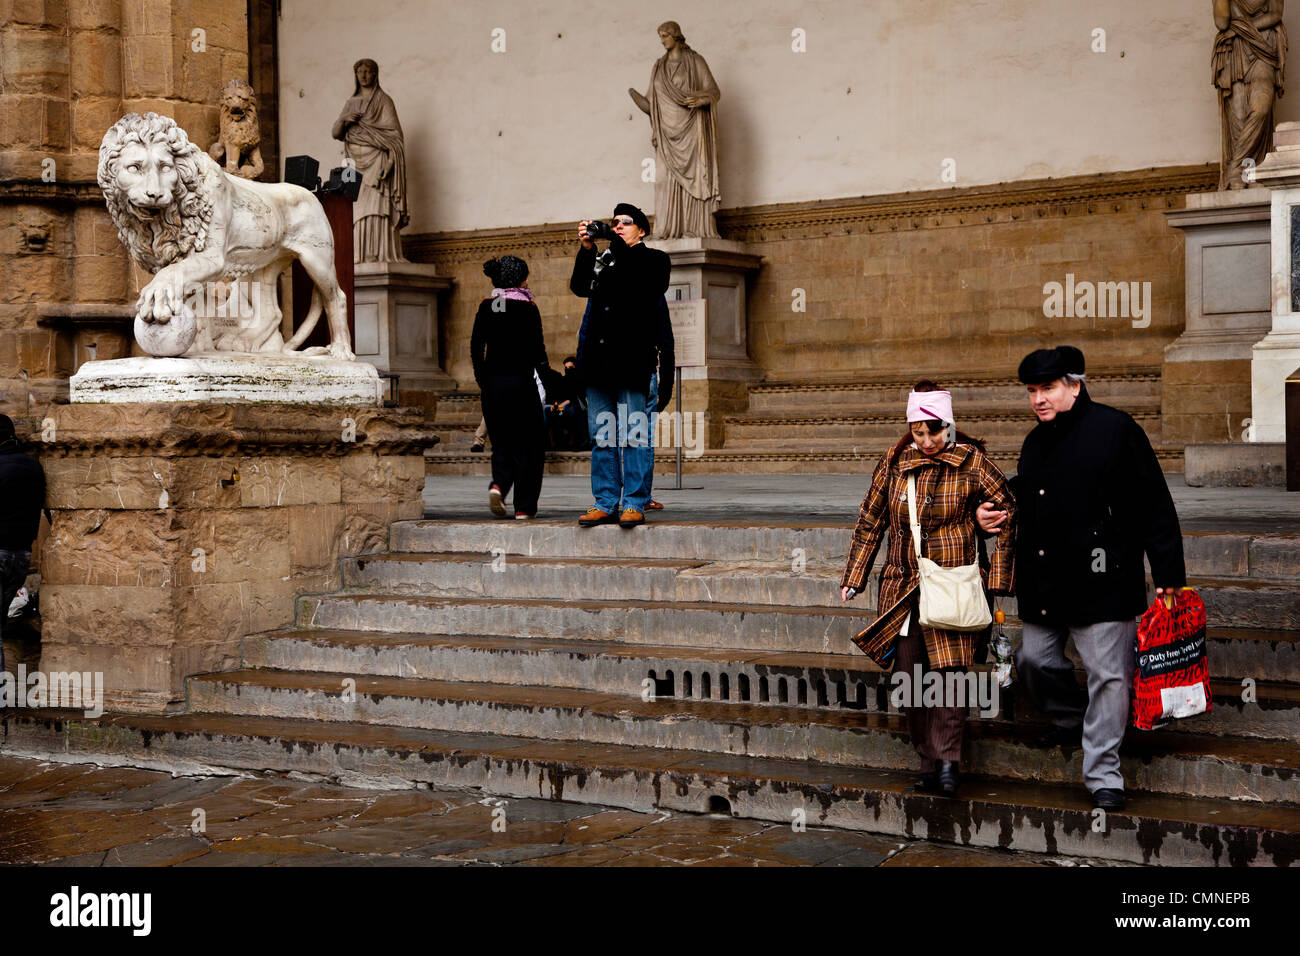 Tourists visiting Romano Greek statues in the Piazza della Signoria, Florence. Stock Photo